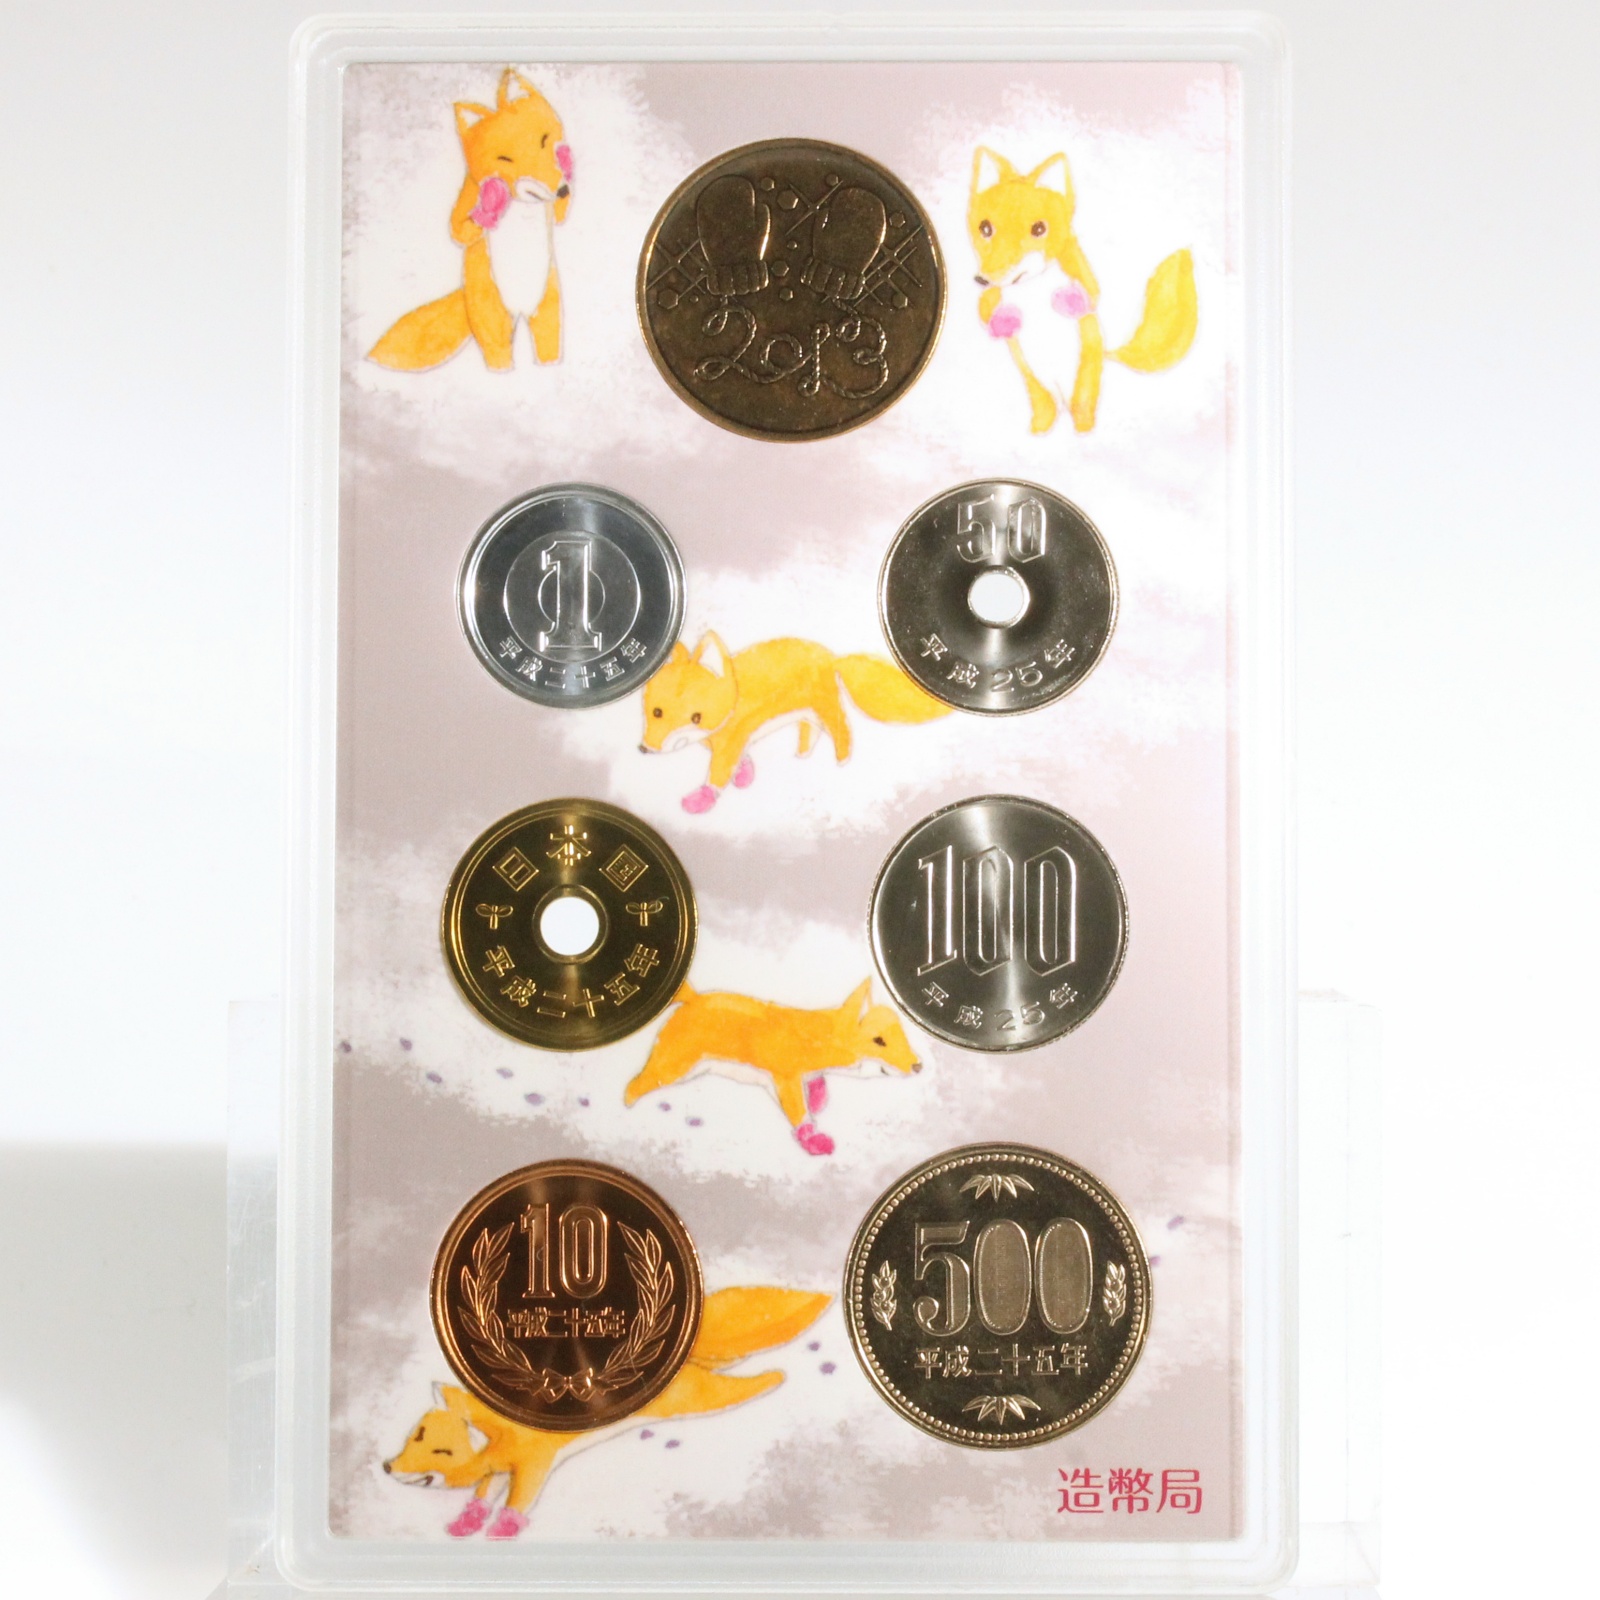 手ぶくろを買いに 新美南吉 名作童話 貨幣セット 平成25年 2013年 ミントセット コインセット 古銭 コイン 日本 | ミスターコインズ